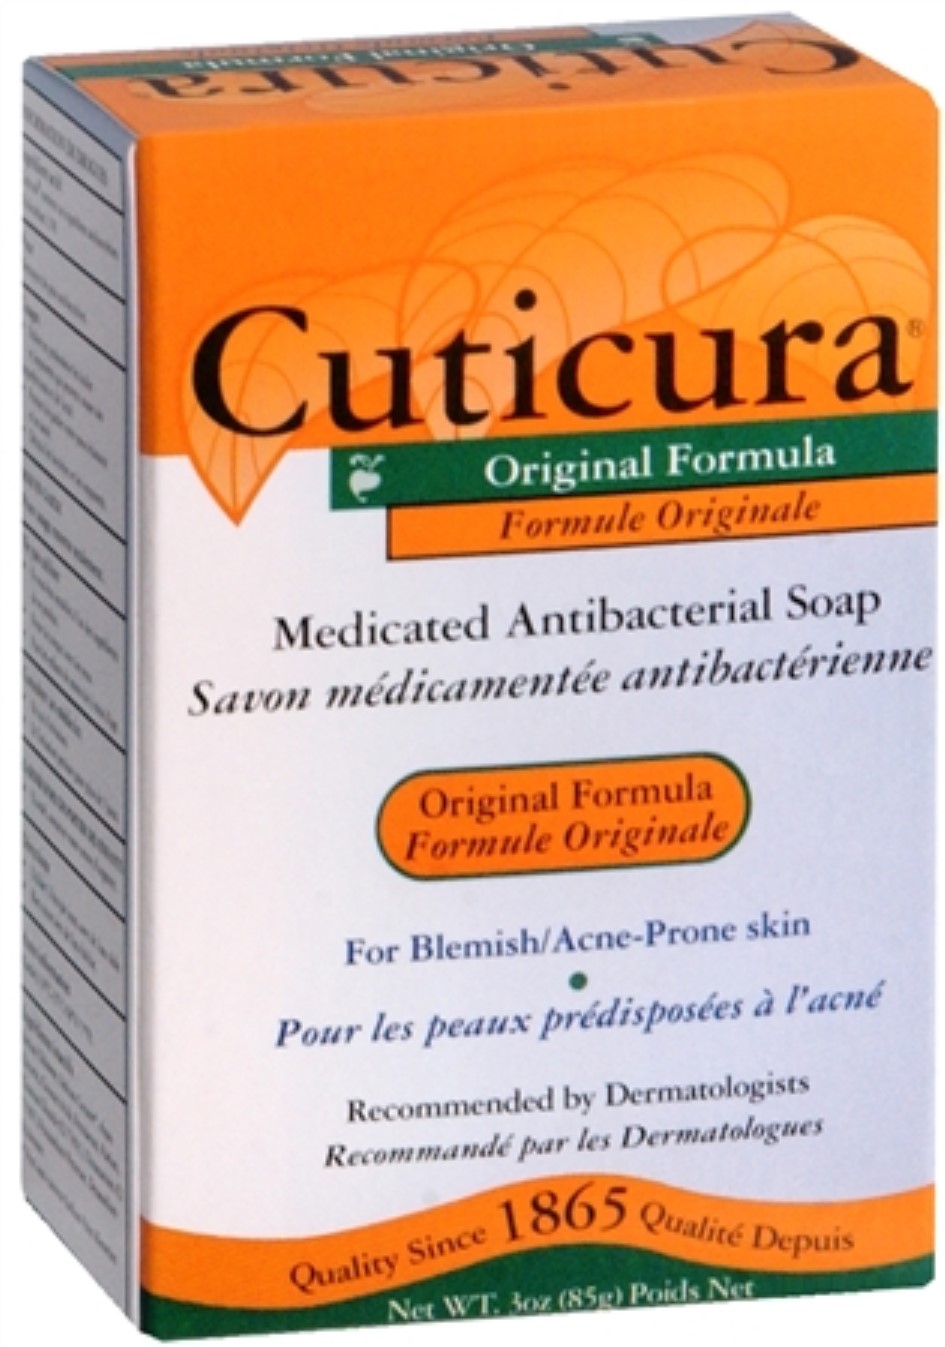 Cuticura Antibacterial Soap Original Formula 3 oz (Pack of 2) - image 1 of 1